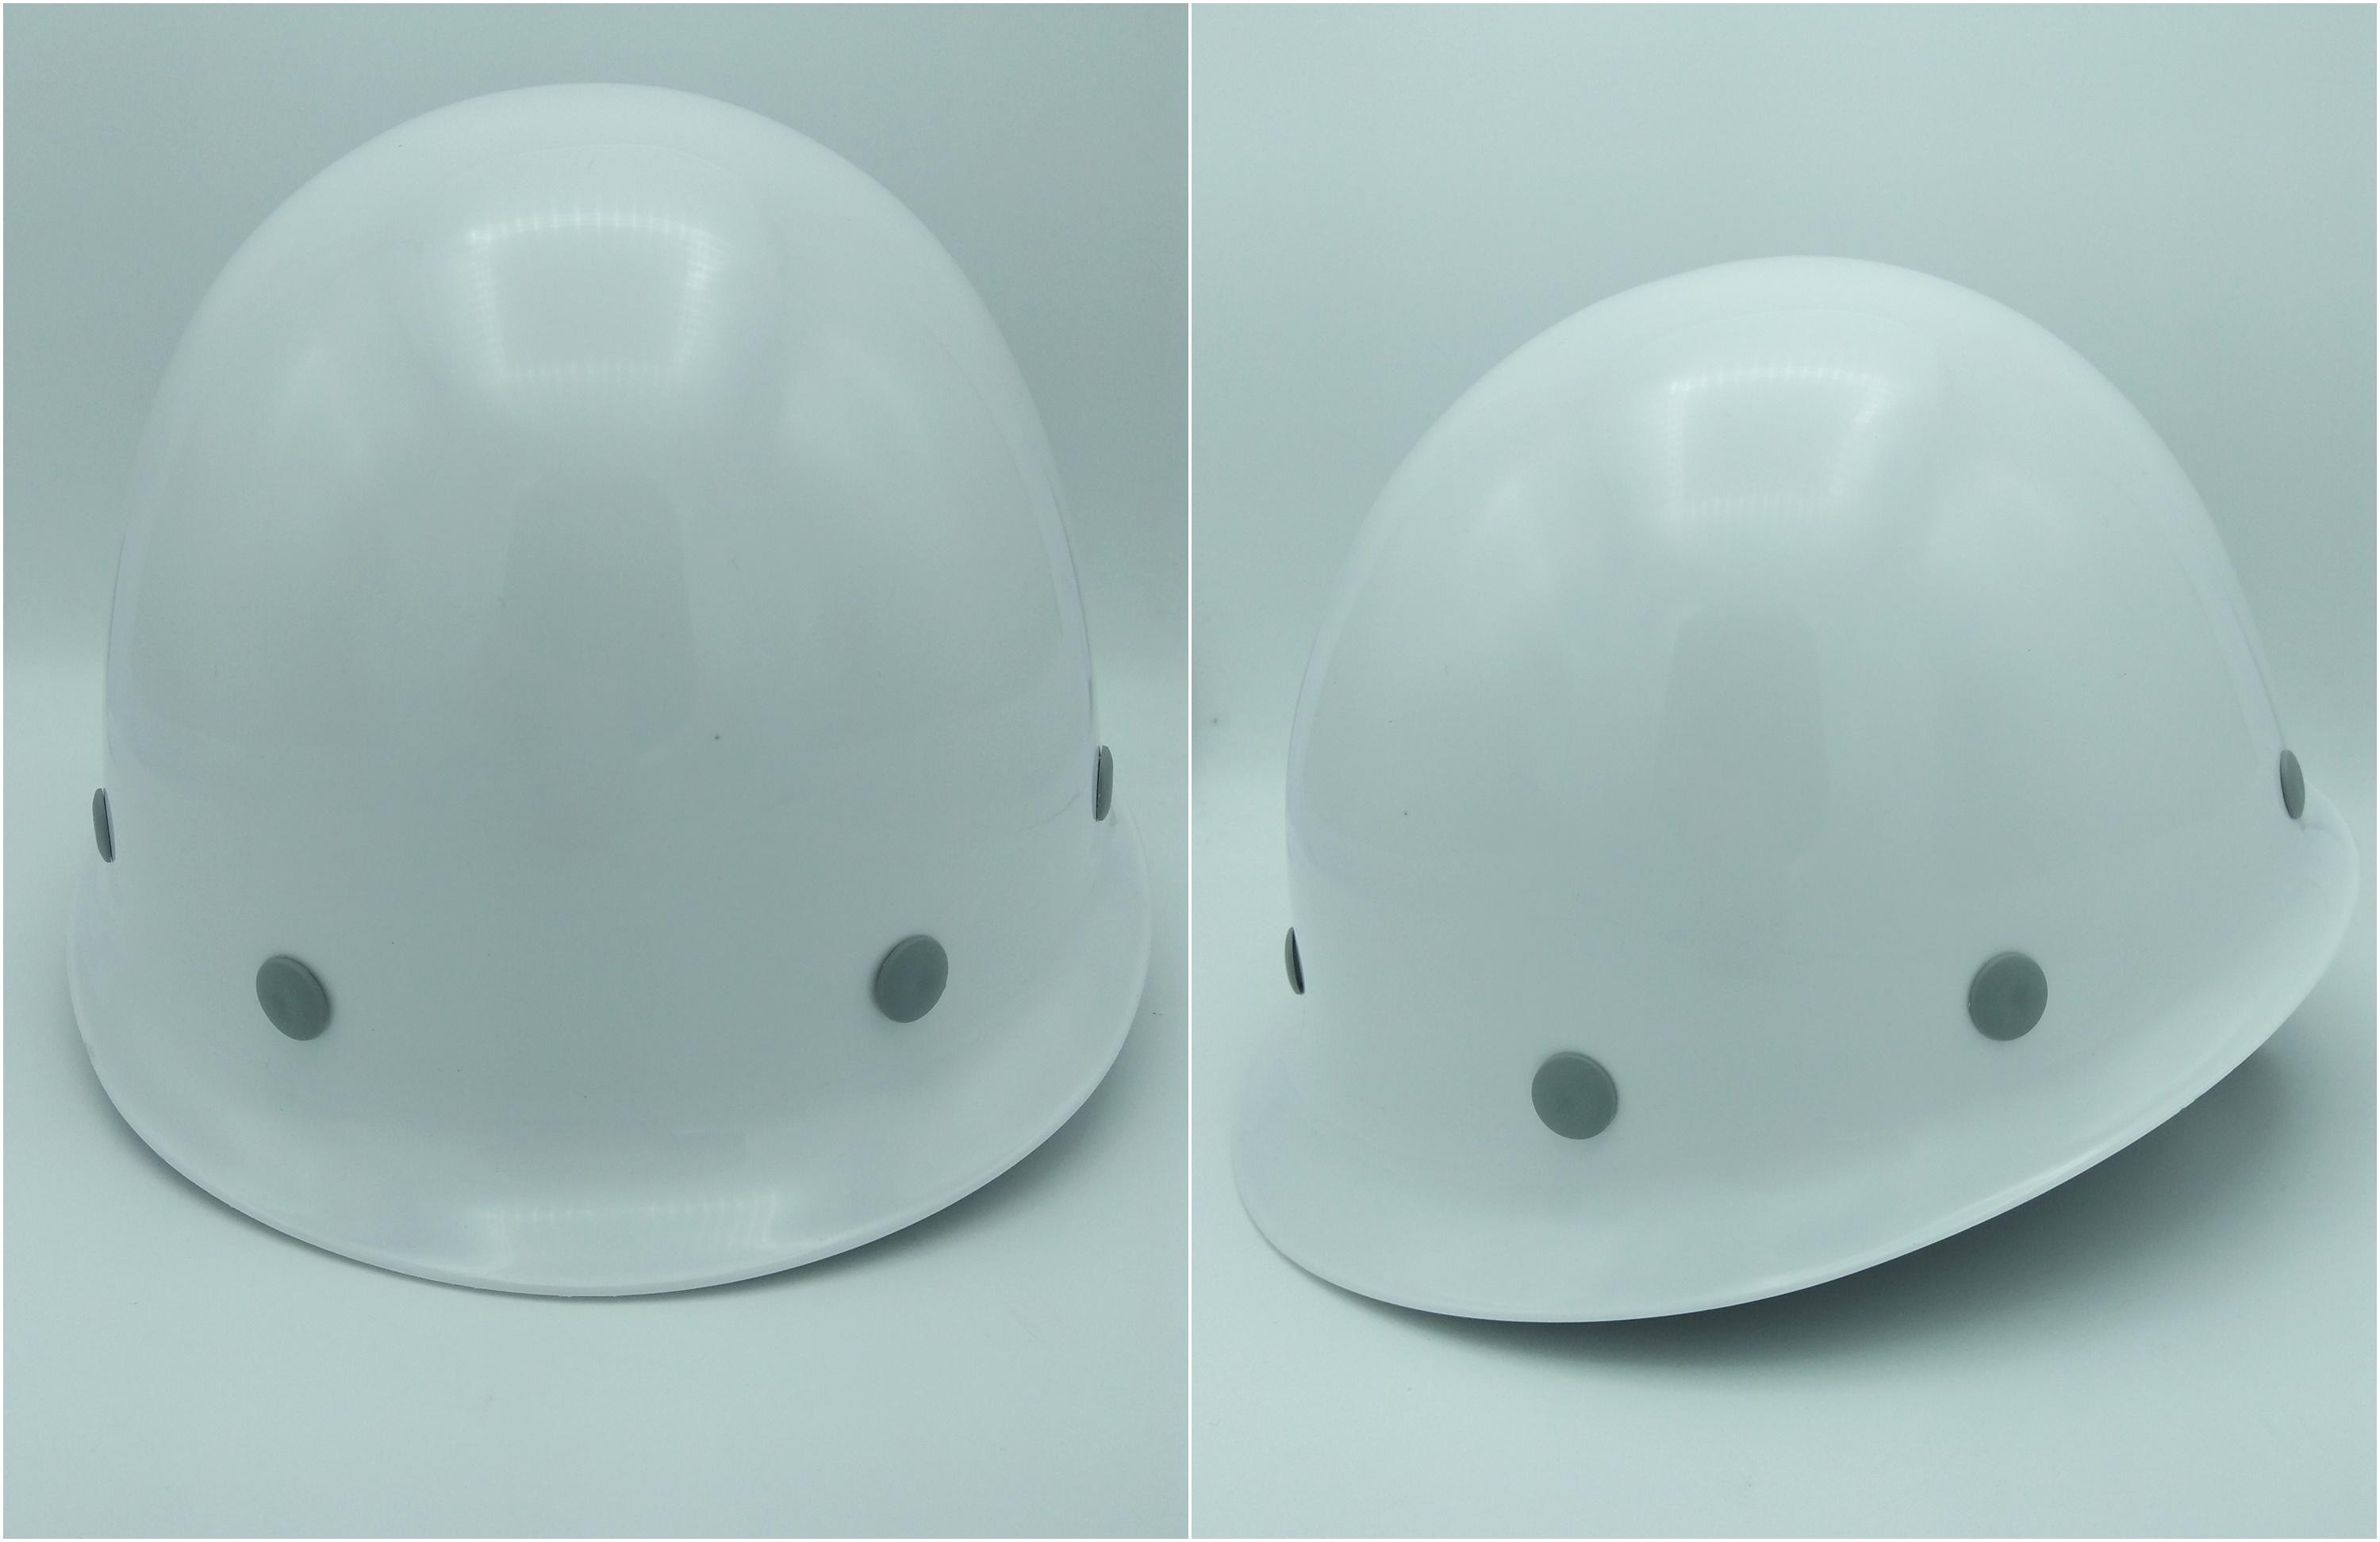 R-ANTINOC หมวกนิรภัย,หมวกเซฟตี้,หมวกวิศวะ  ทรงญี่ปุ่น ปรับหมุน พร้อมสายรัดคาง 4 จุด มอก.368-2554 สีขาว( HM-J-B3W )